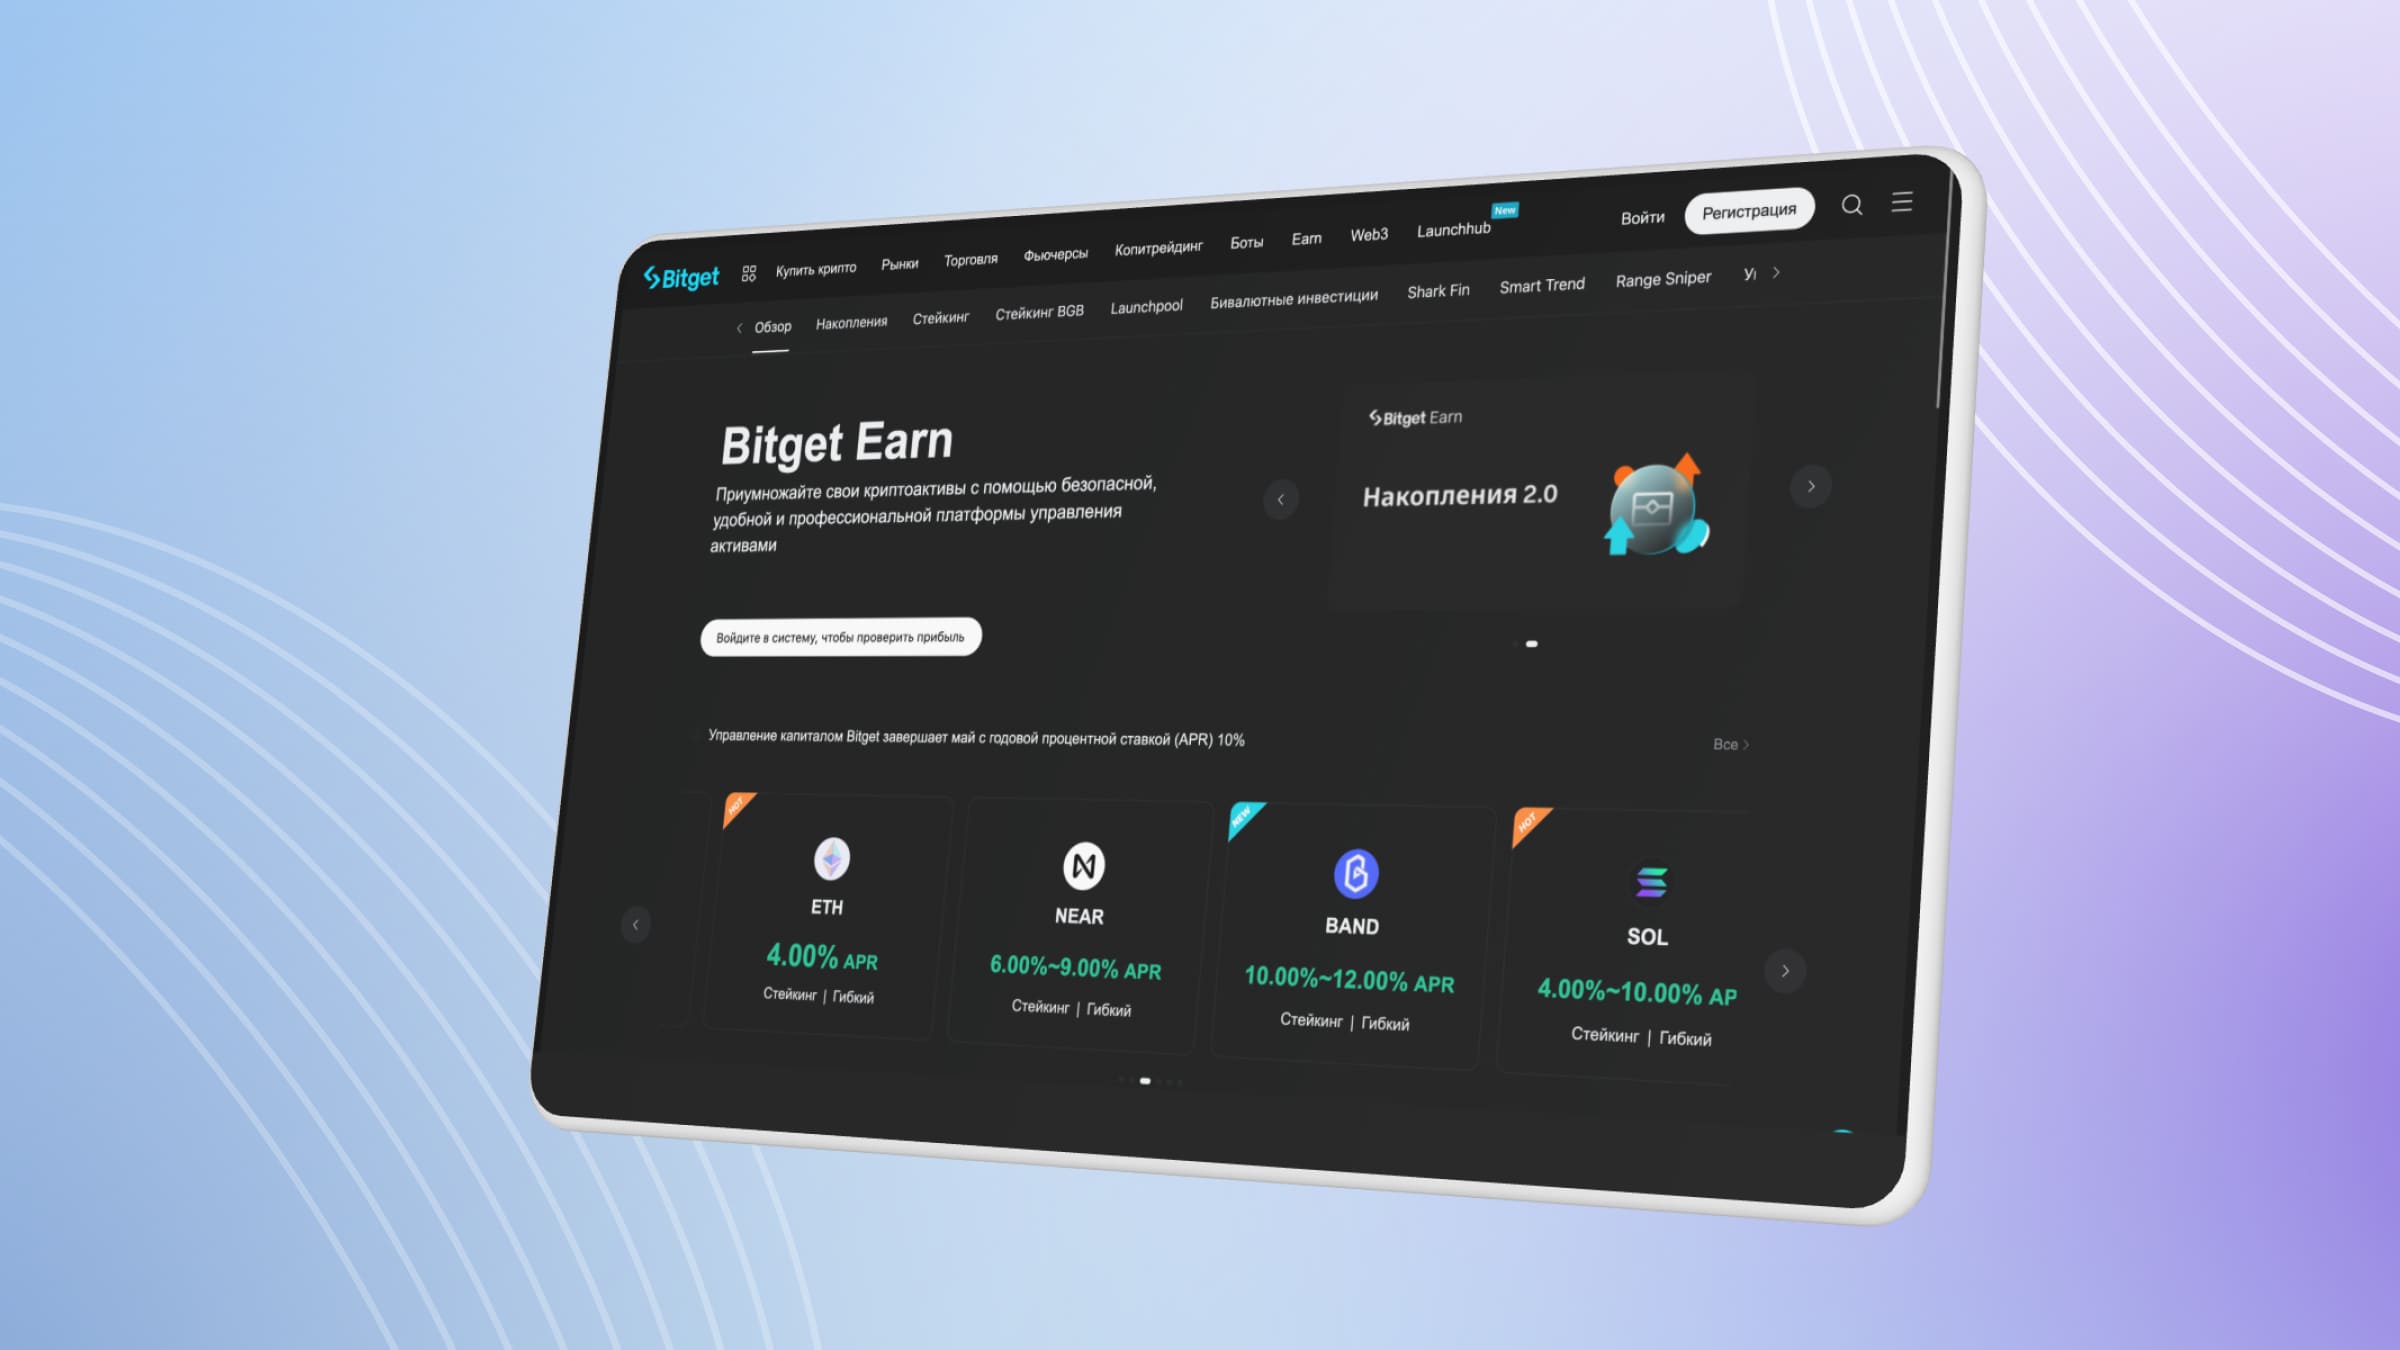 Пользователи Bitget могут зарабатывать на лендинге криптовалют на платформе Bitget Earn.